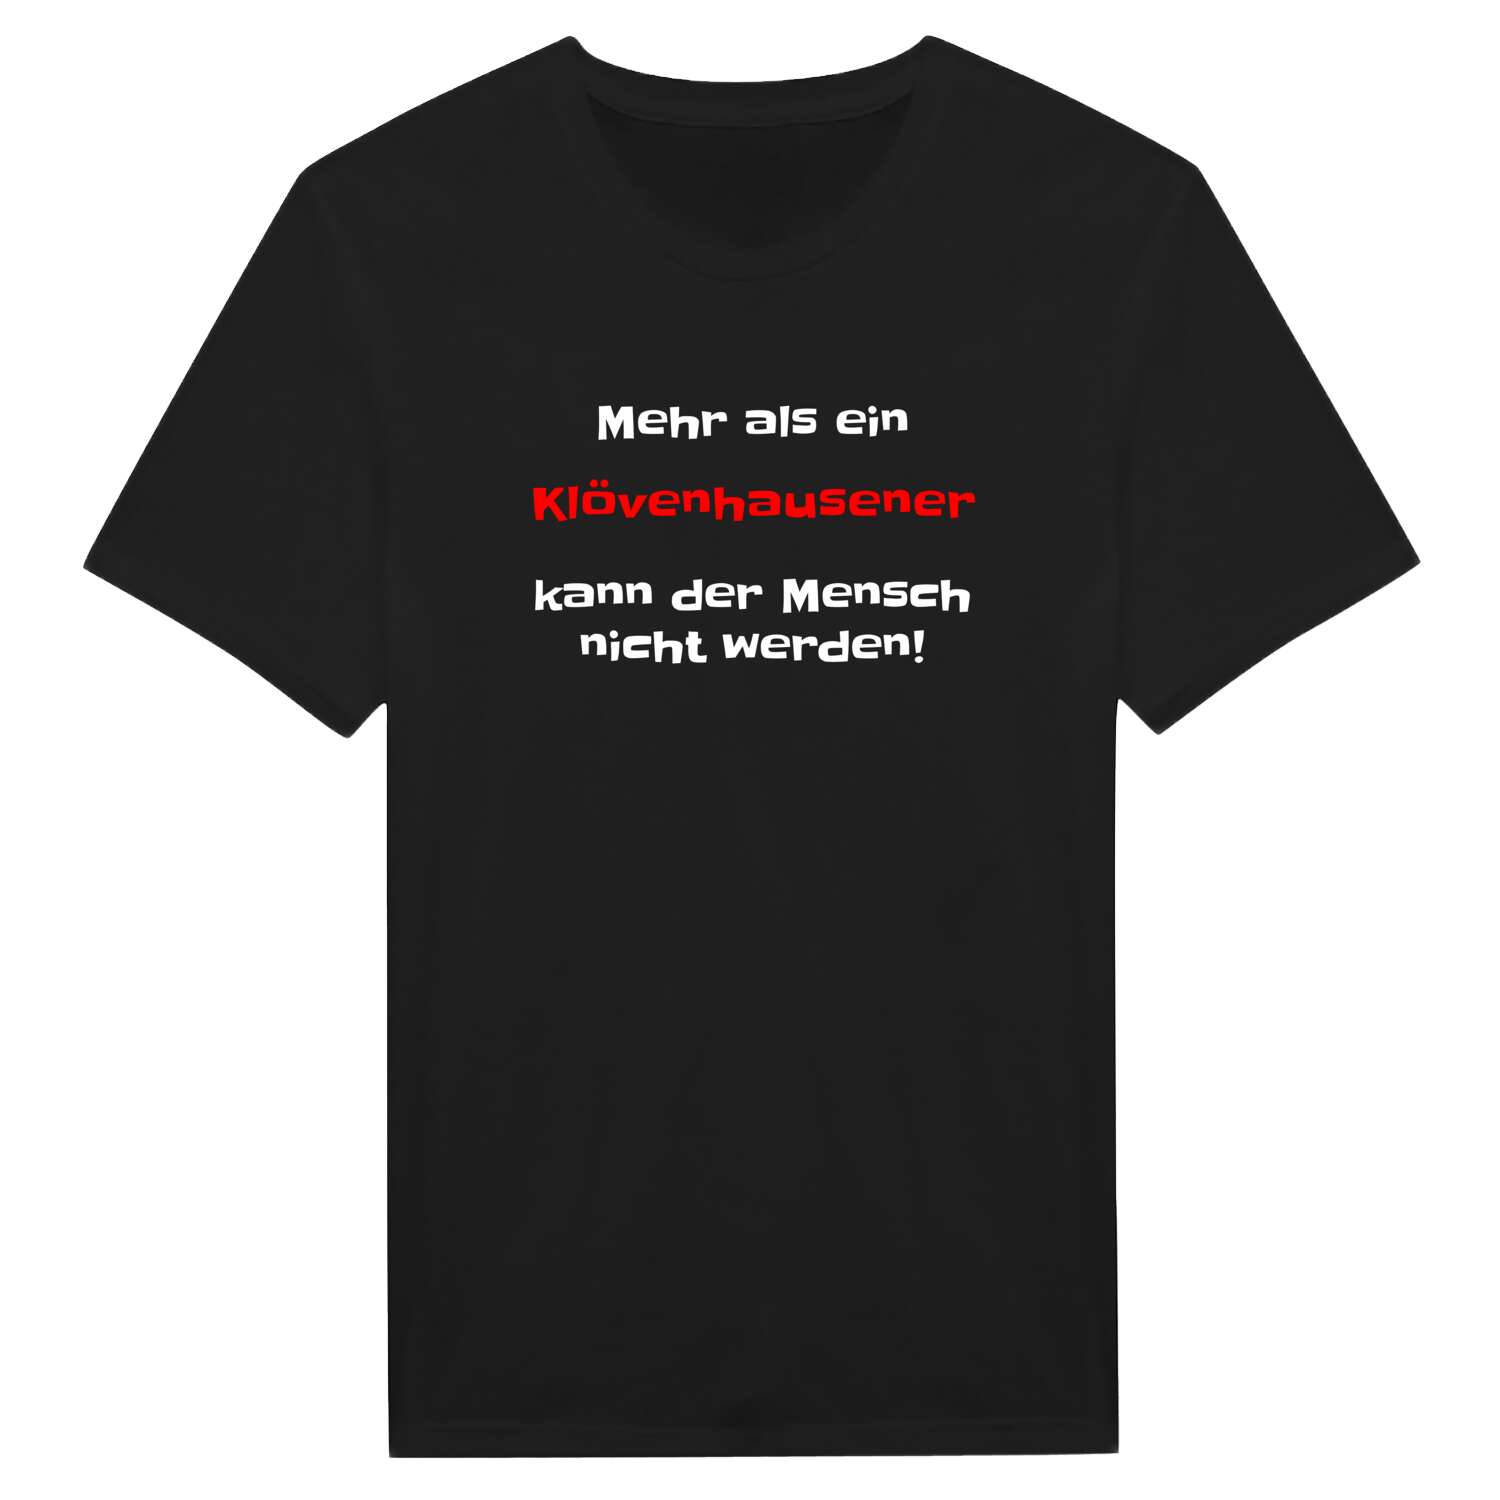 Klövenhausen T-Shirt »Mehr als ein«